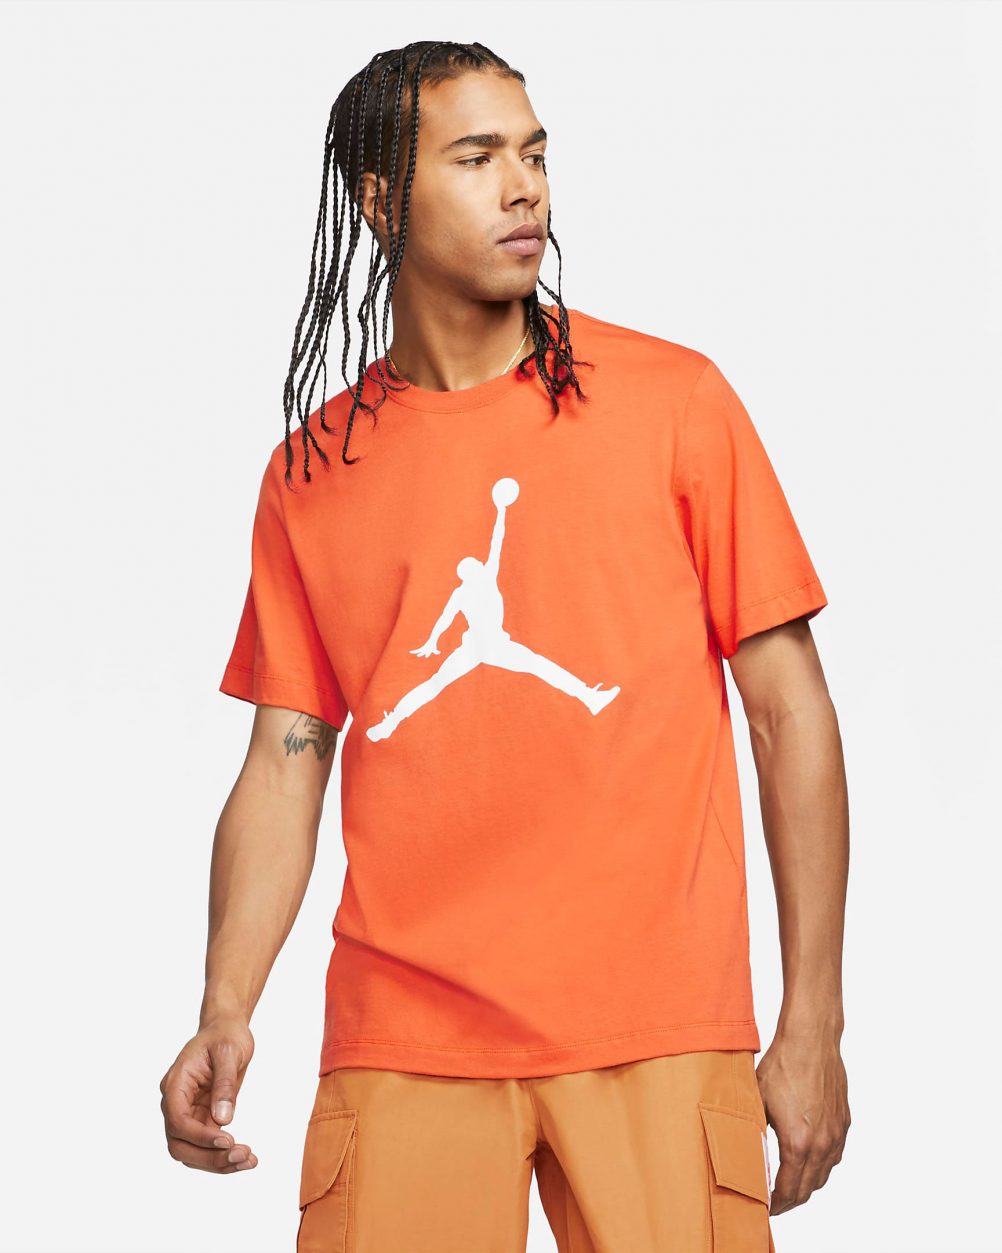 Air Jordan 13 Starfish Shirt Hat Sneaker Outfit